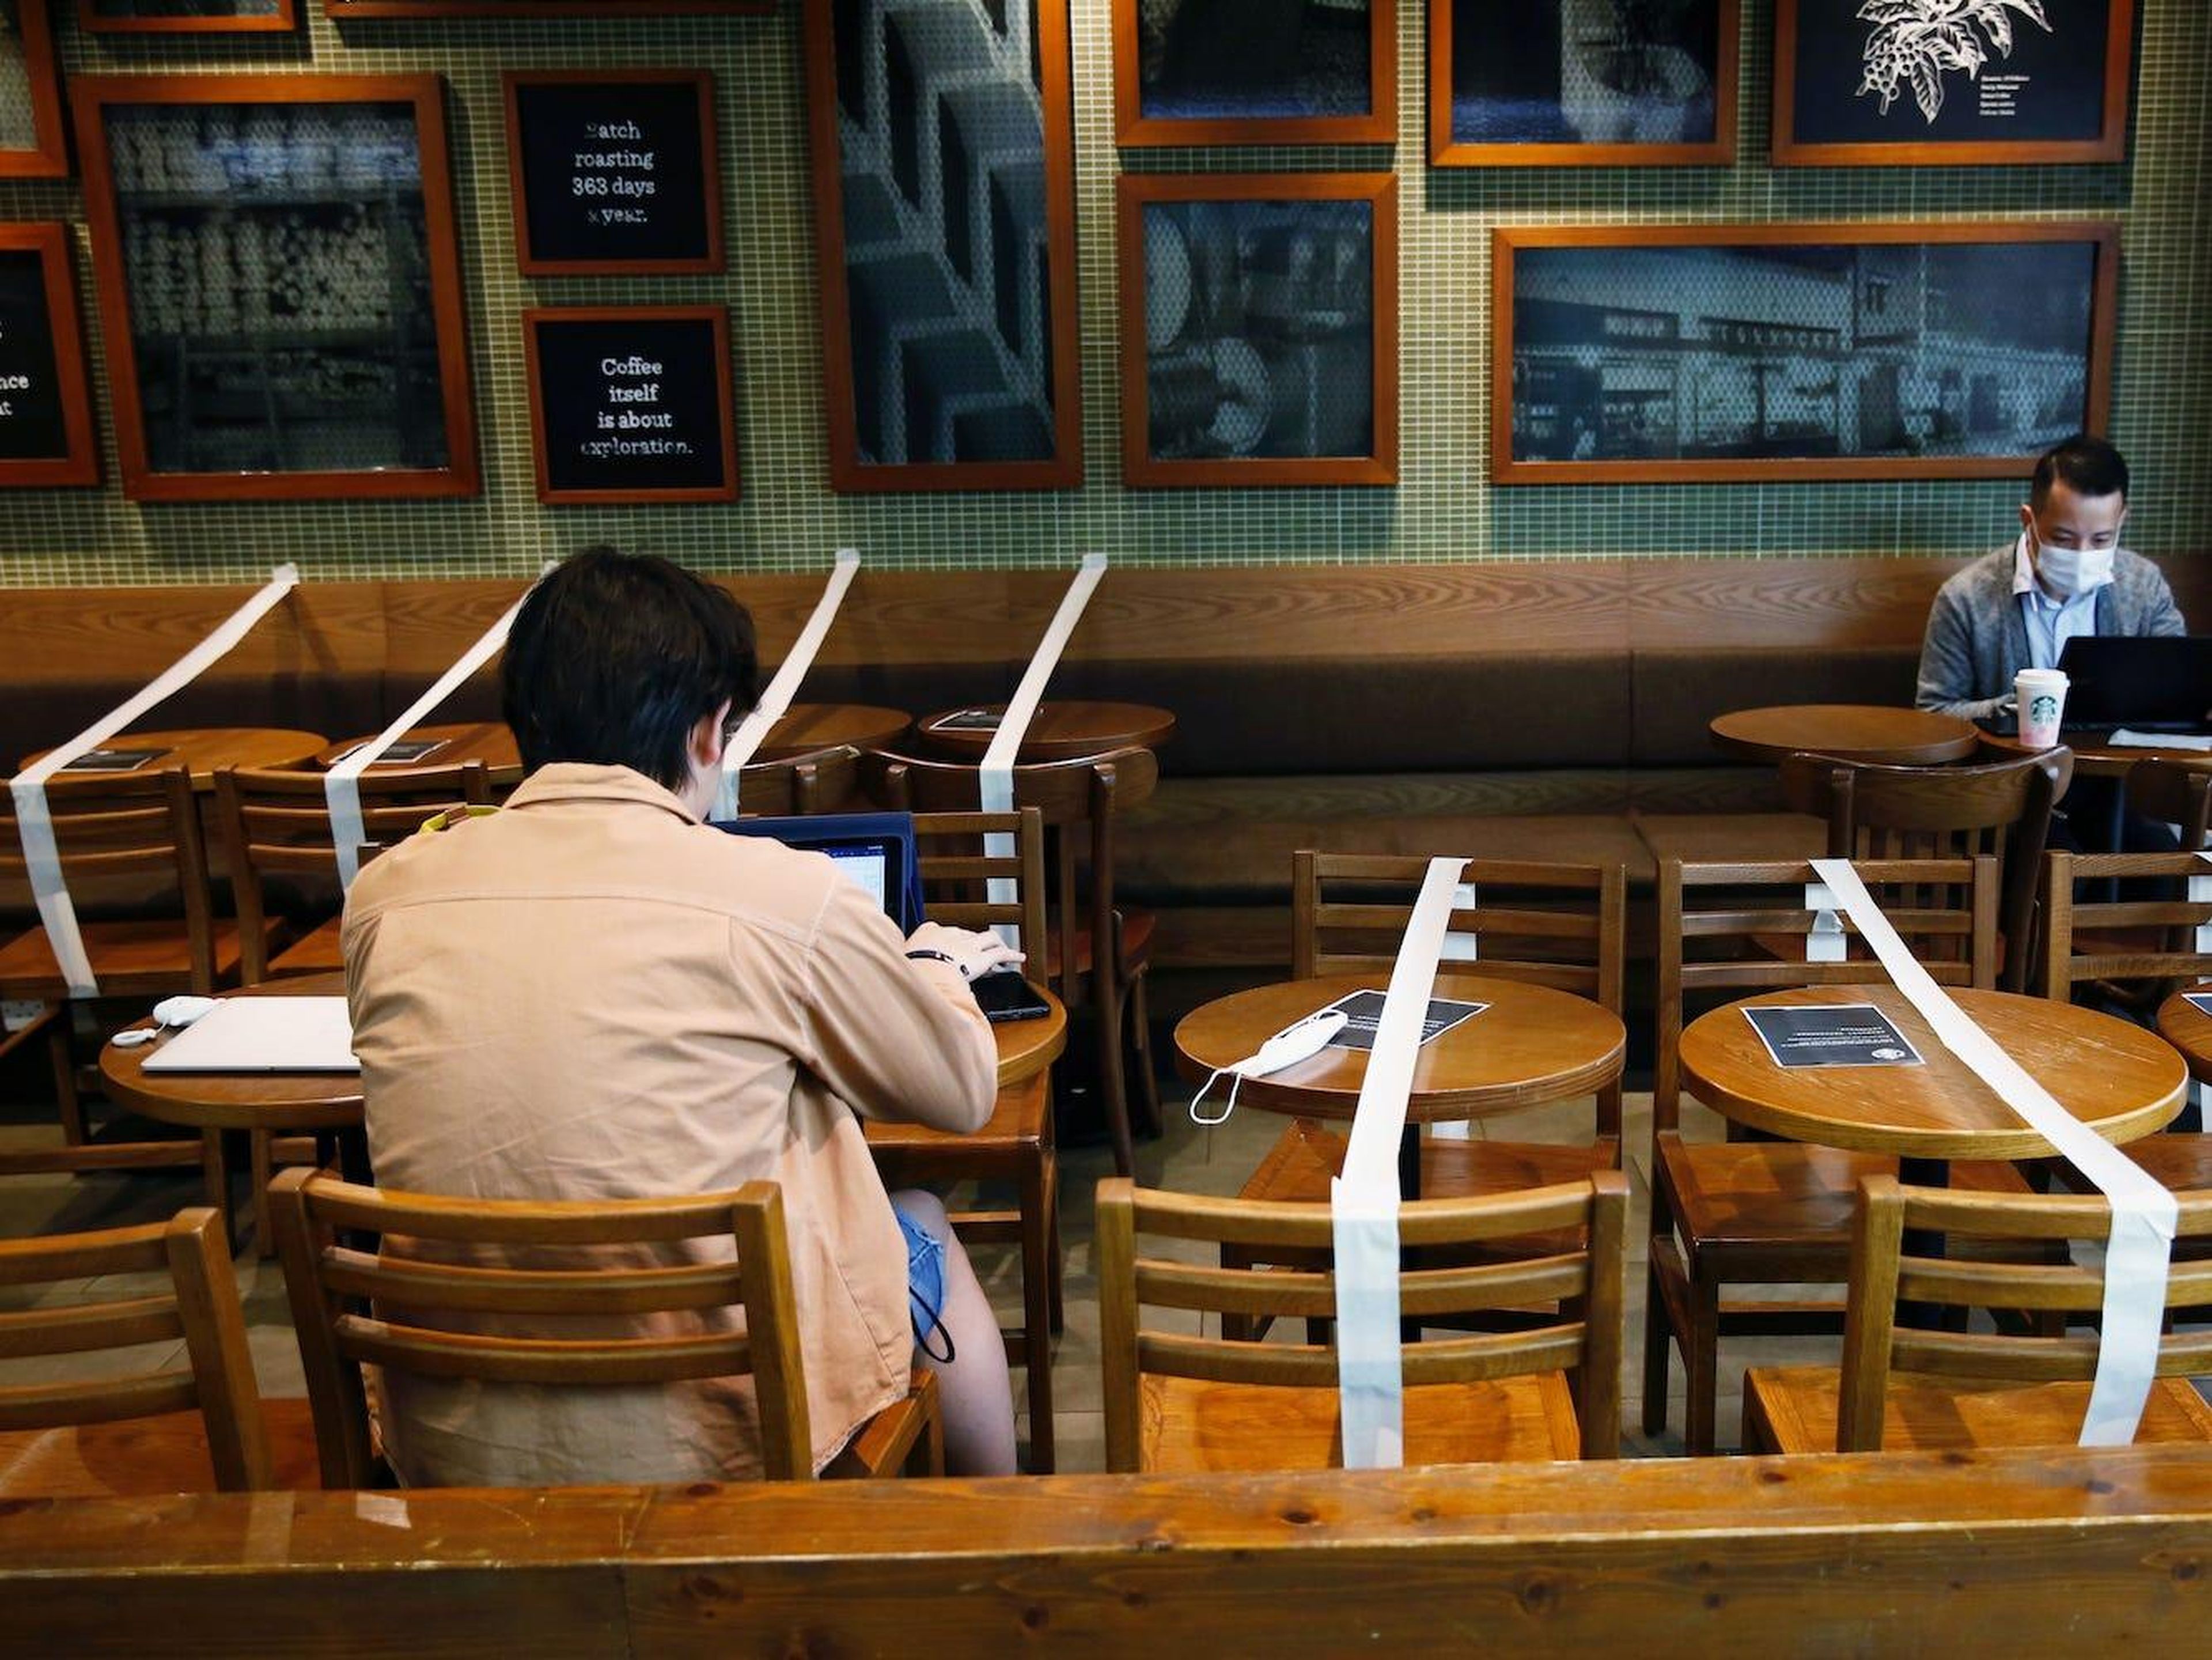 Mesas y sillas con cinta adhesiva para mantener el distanciamiento social en una cafetería Starbucks en Hong Kong, el 2 de abril de 2020.